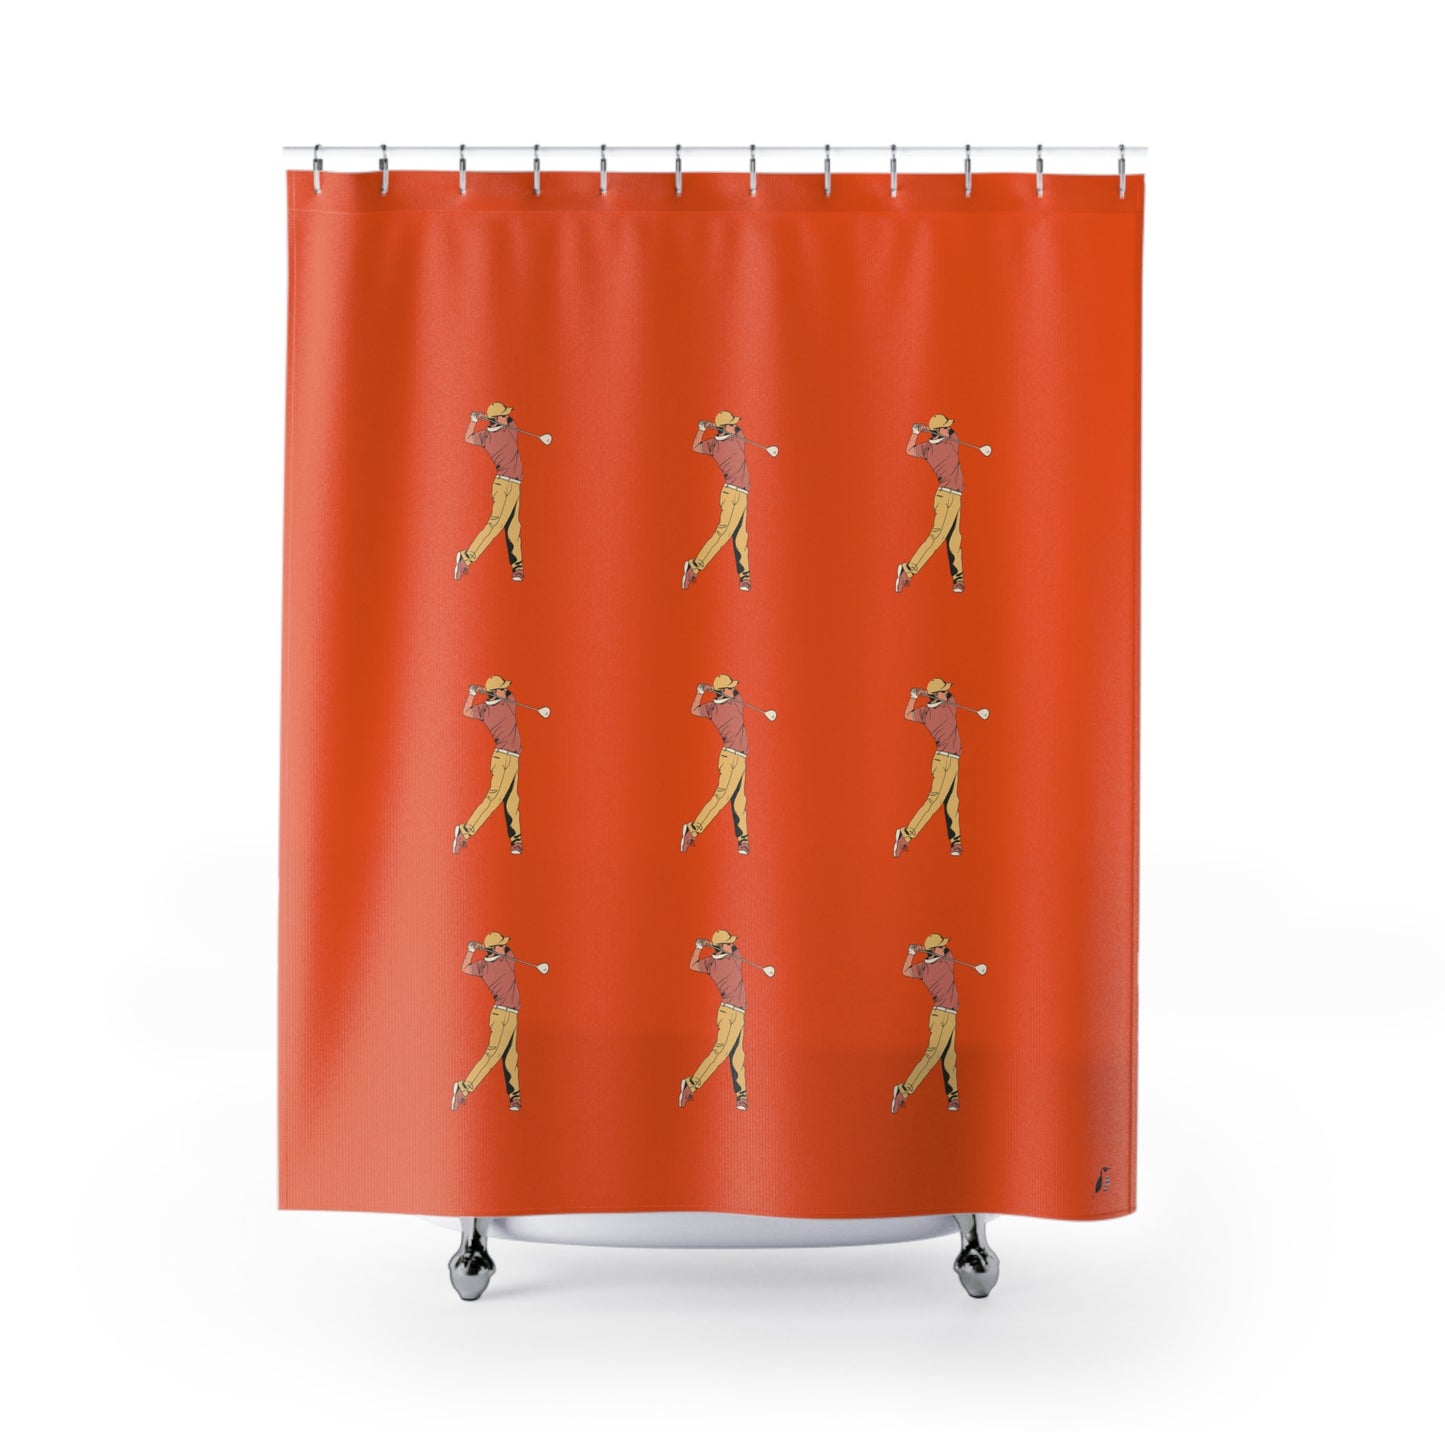 Shower Curtains: #2 Golf Orange